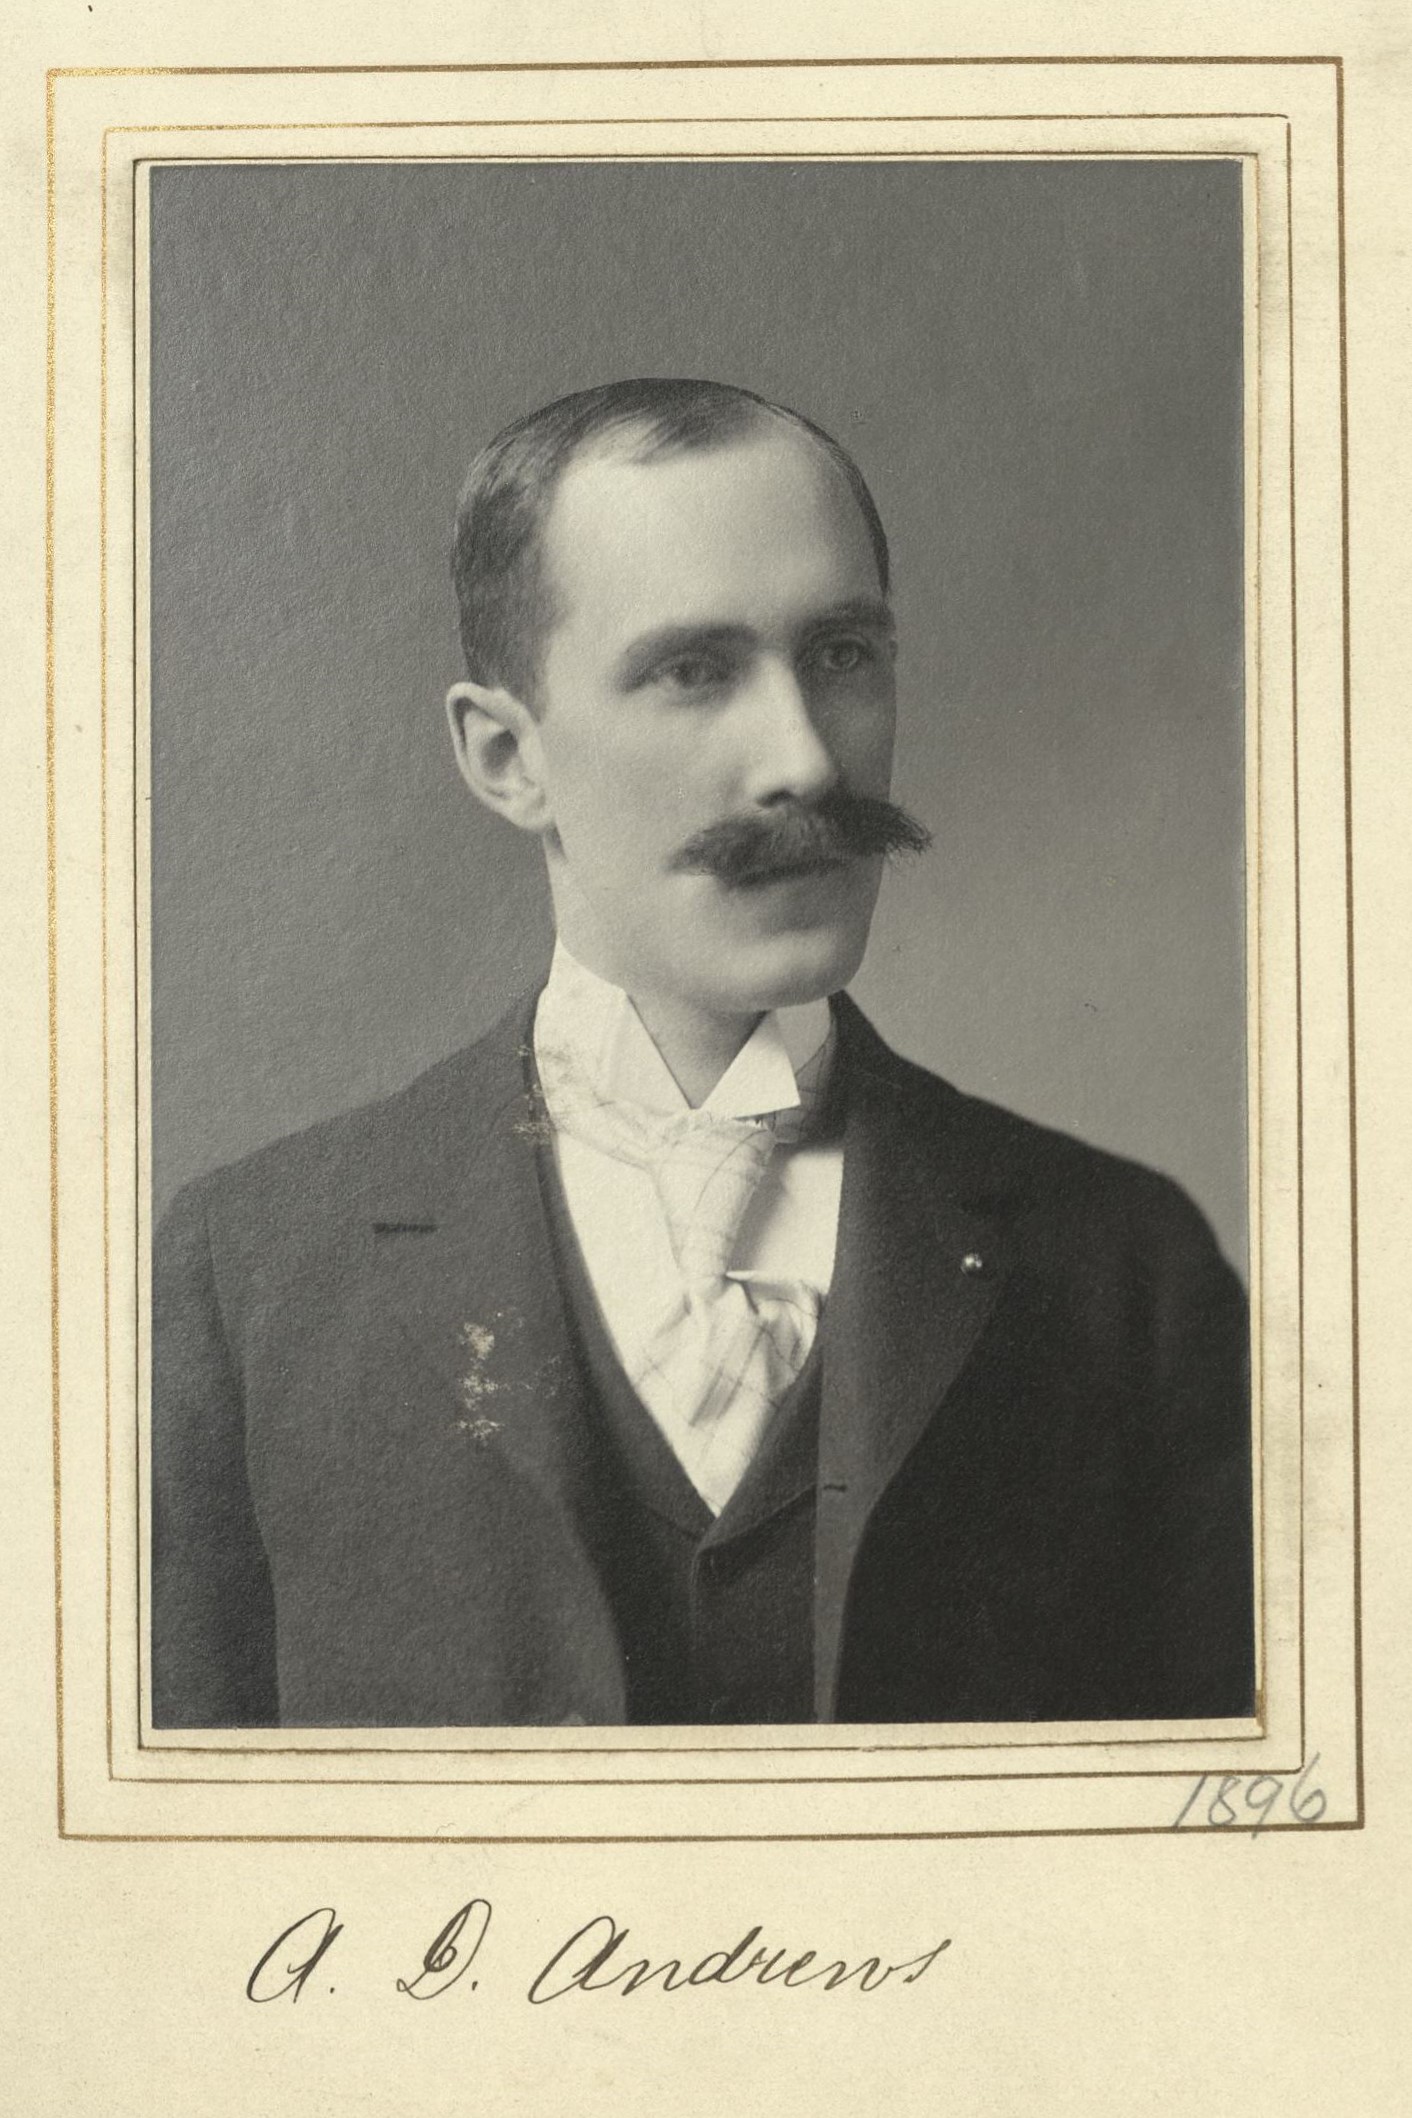 Member portrait of Avery D. Andrews